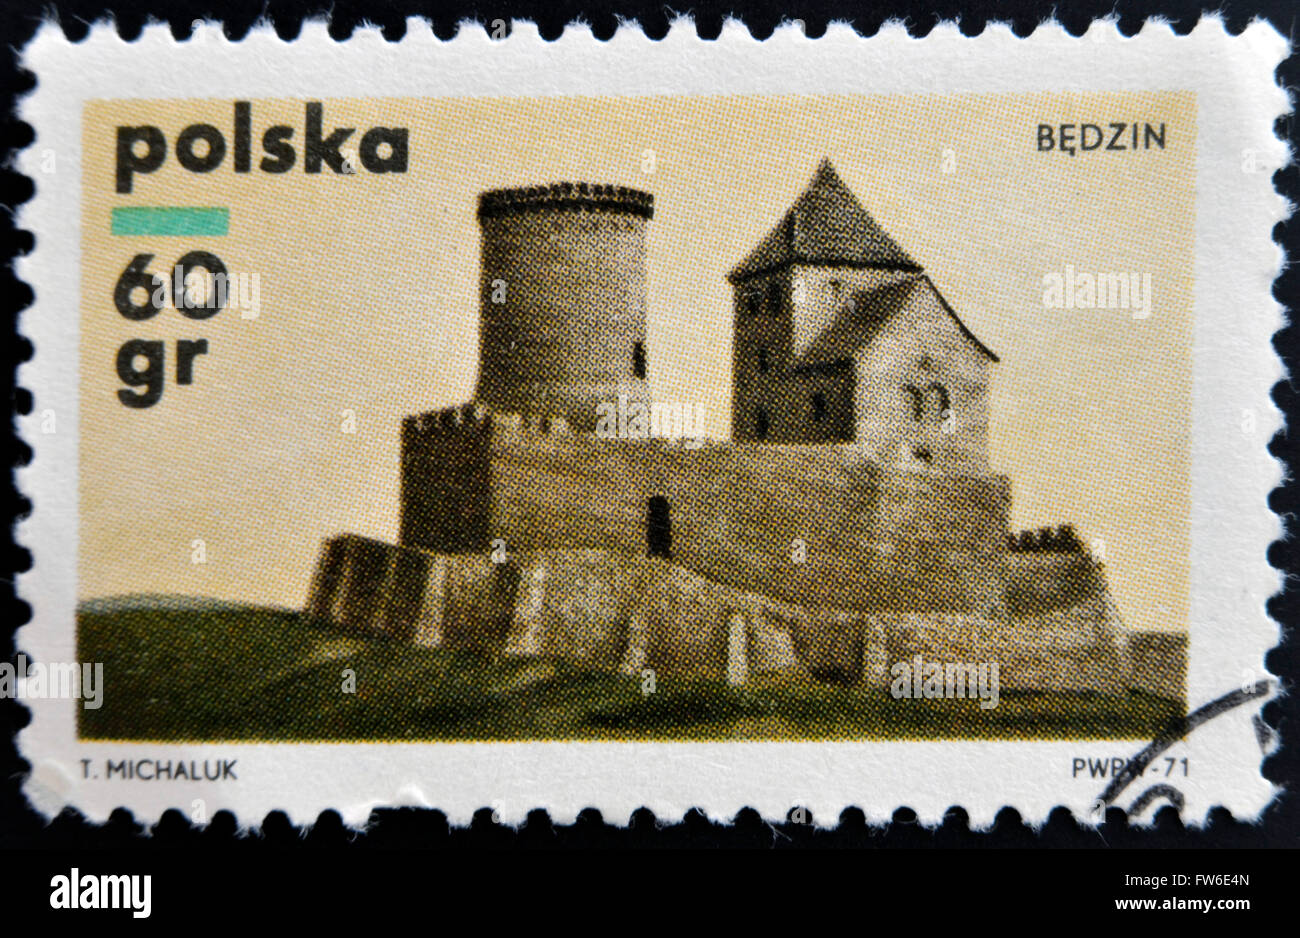 POLAND - CIRCA 1971: A stamp printed in Poland shows a Castle, Bedzin, circa 1971 Stock Photo